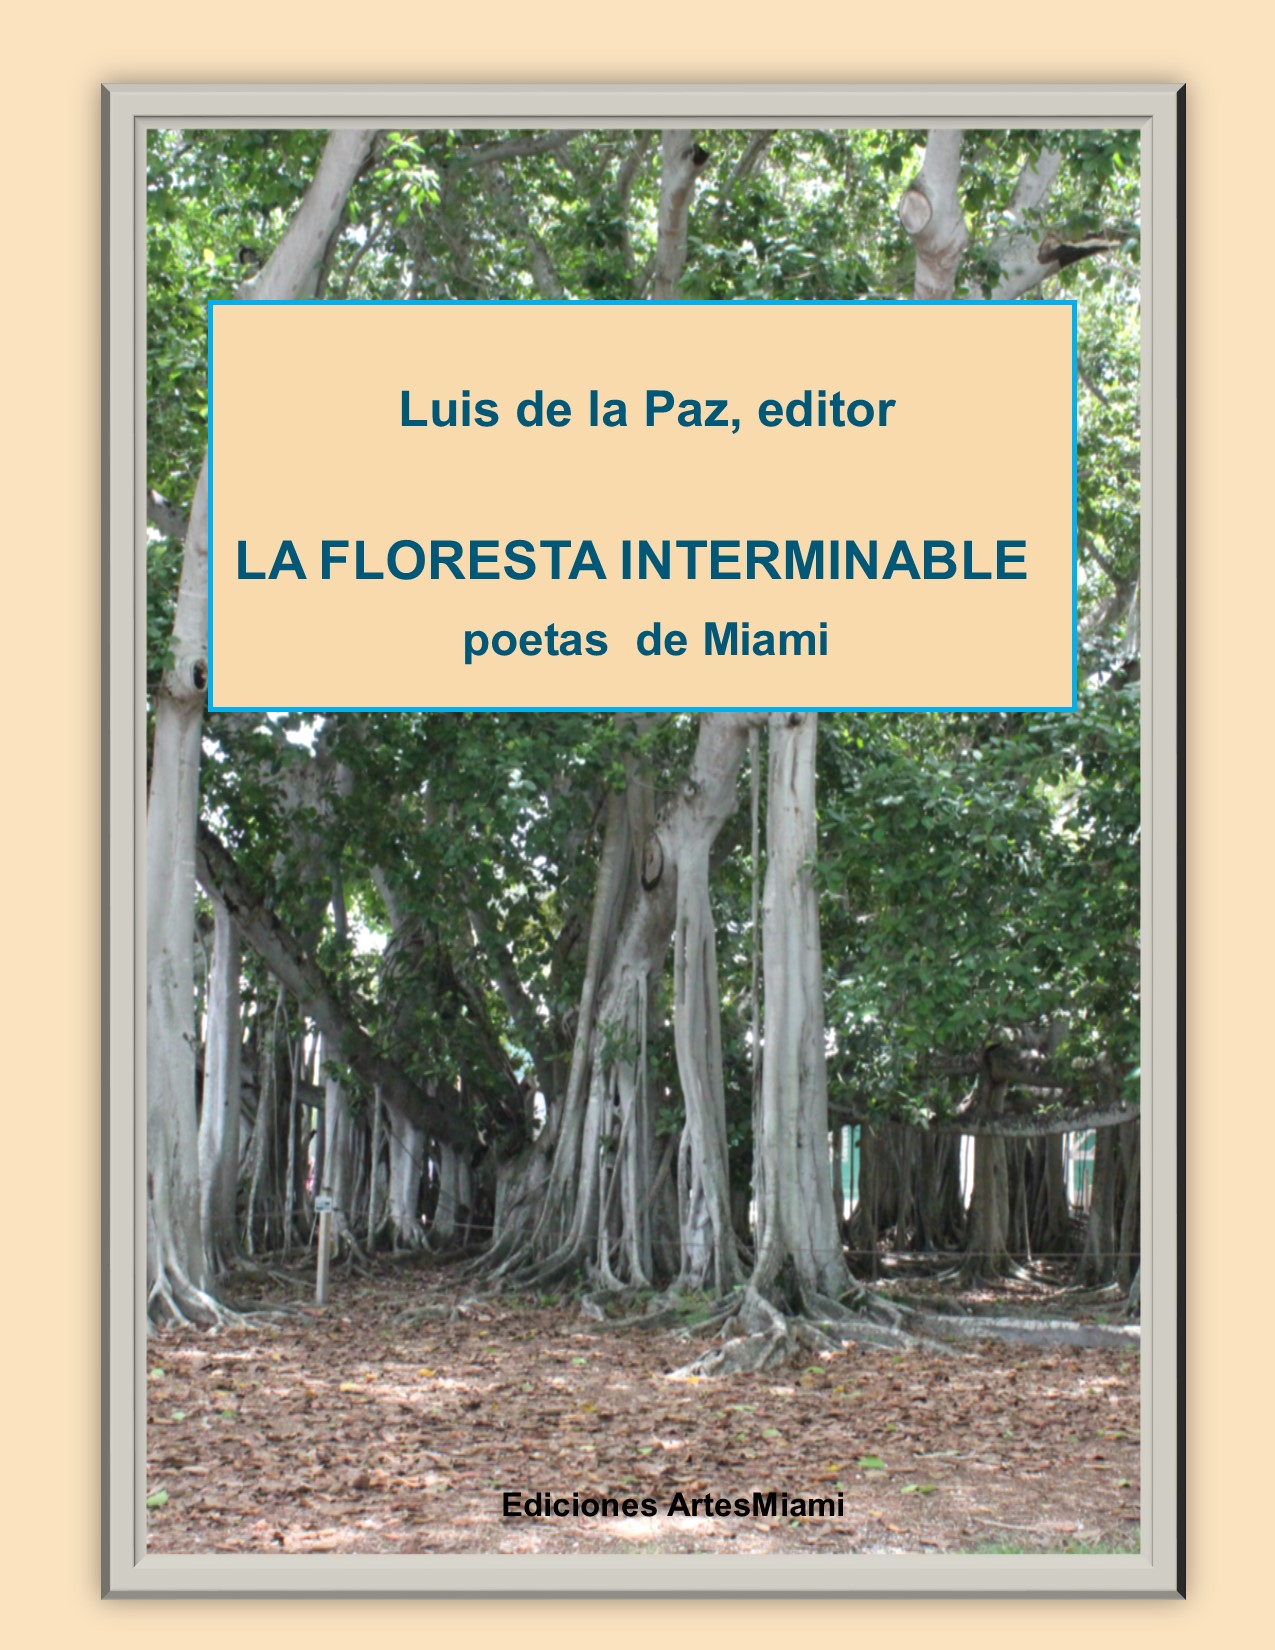 La Floresta Interminable es la más reciente colección de poesía hispana de Miami